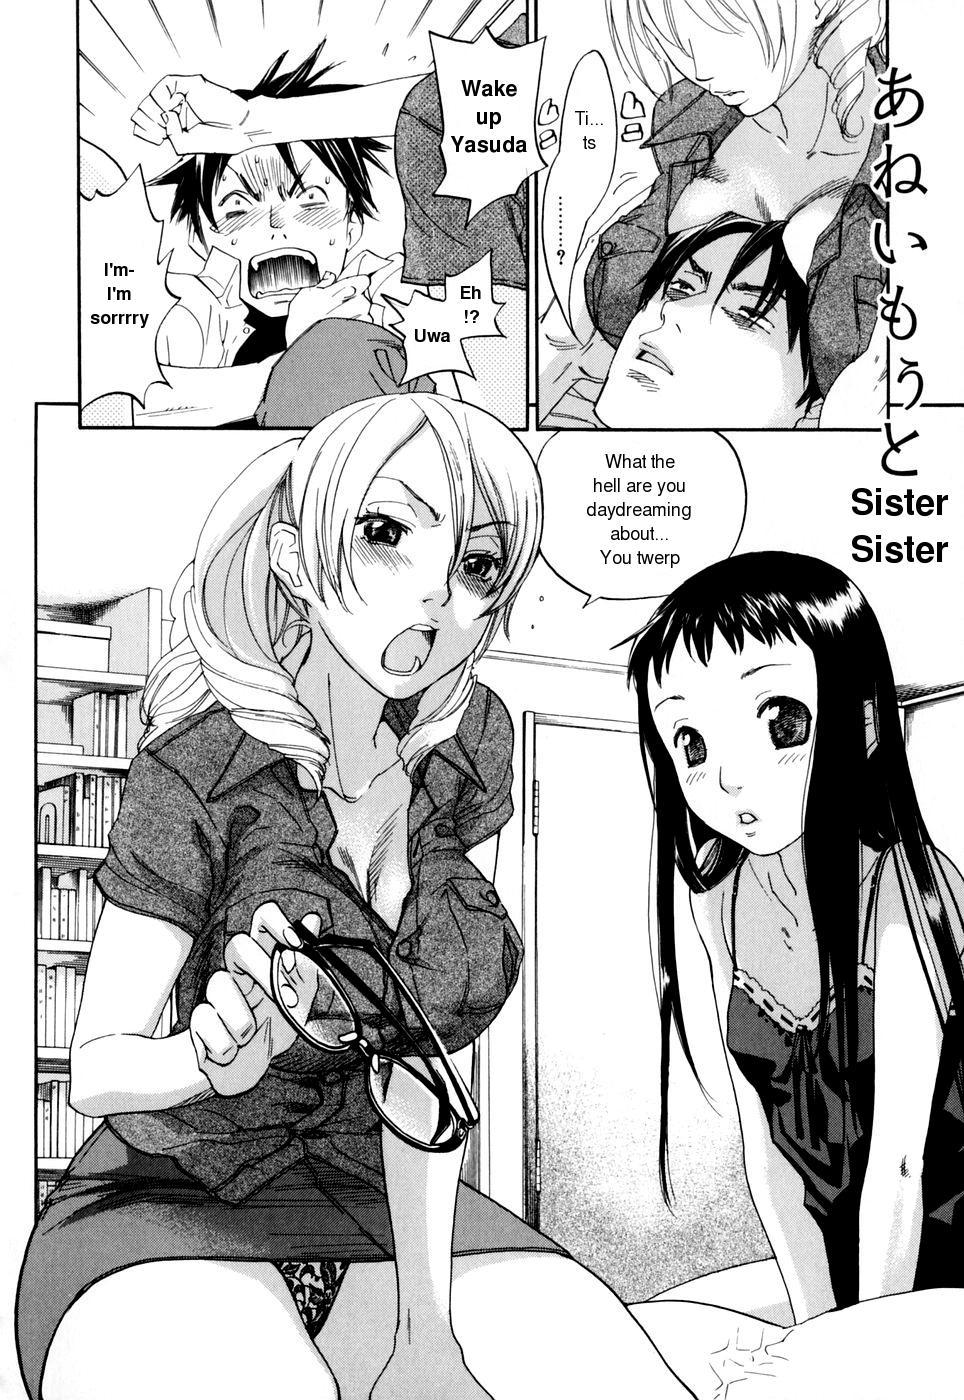 Softcore Sister Sister Girlnextdoor - Page 2